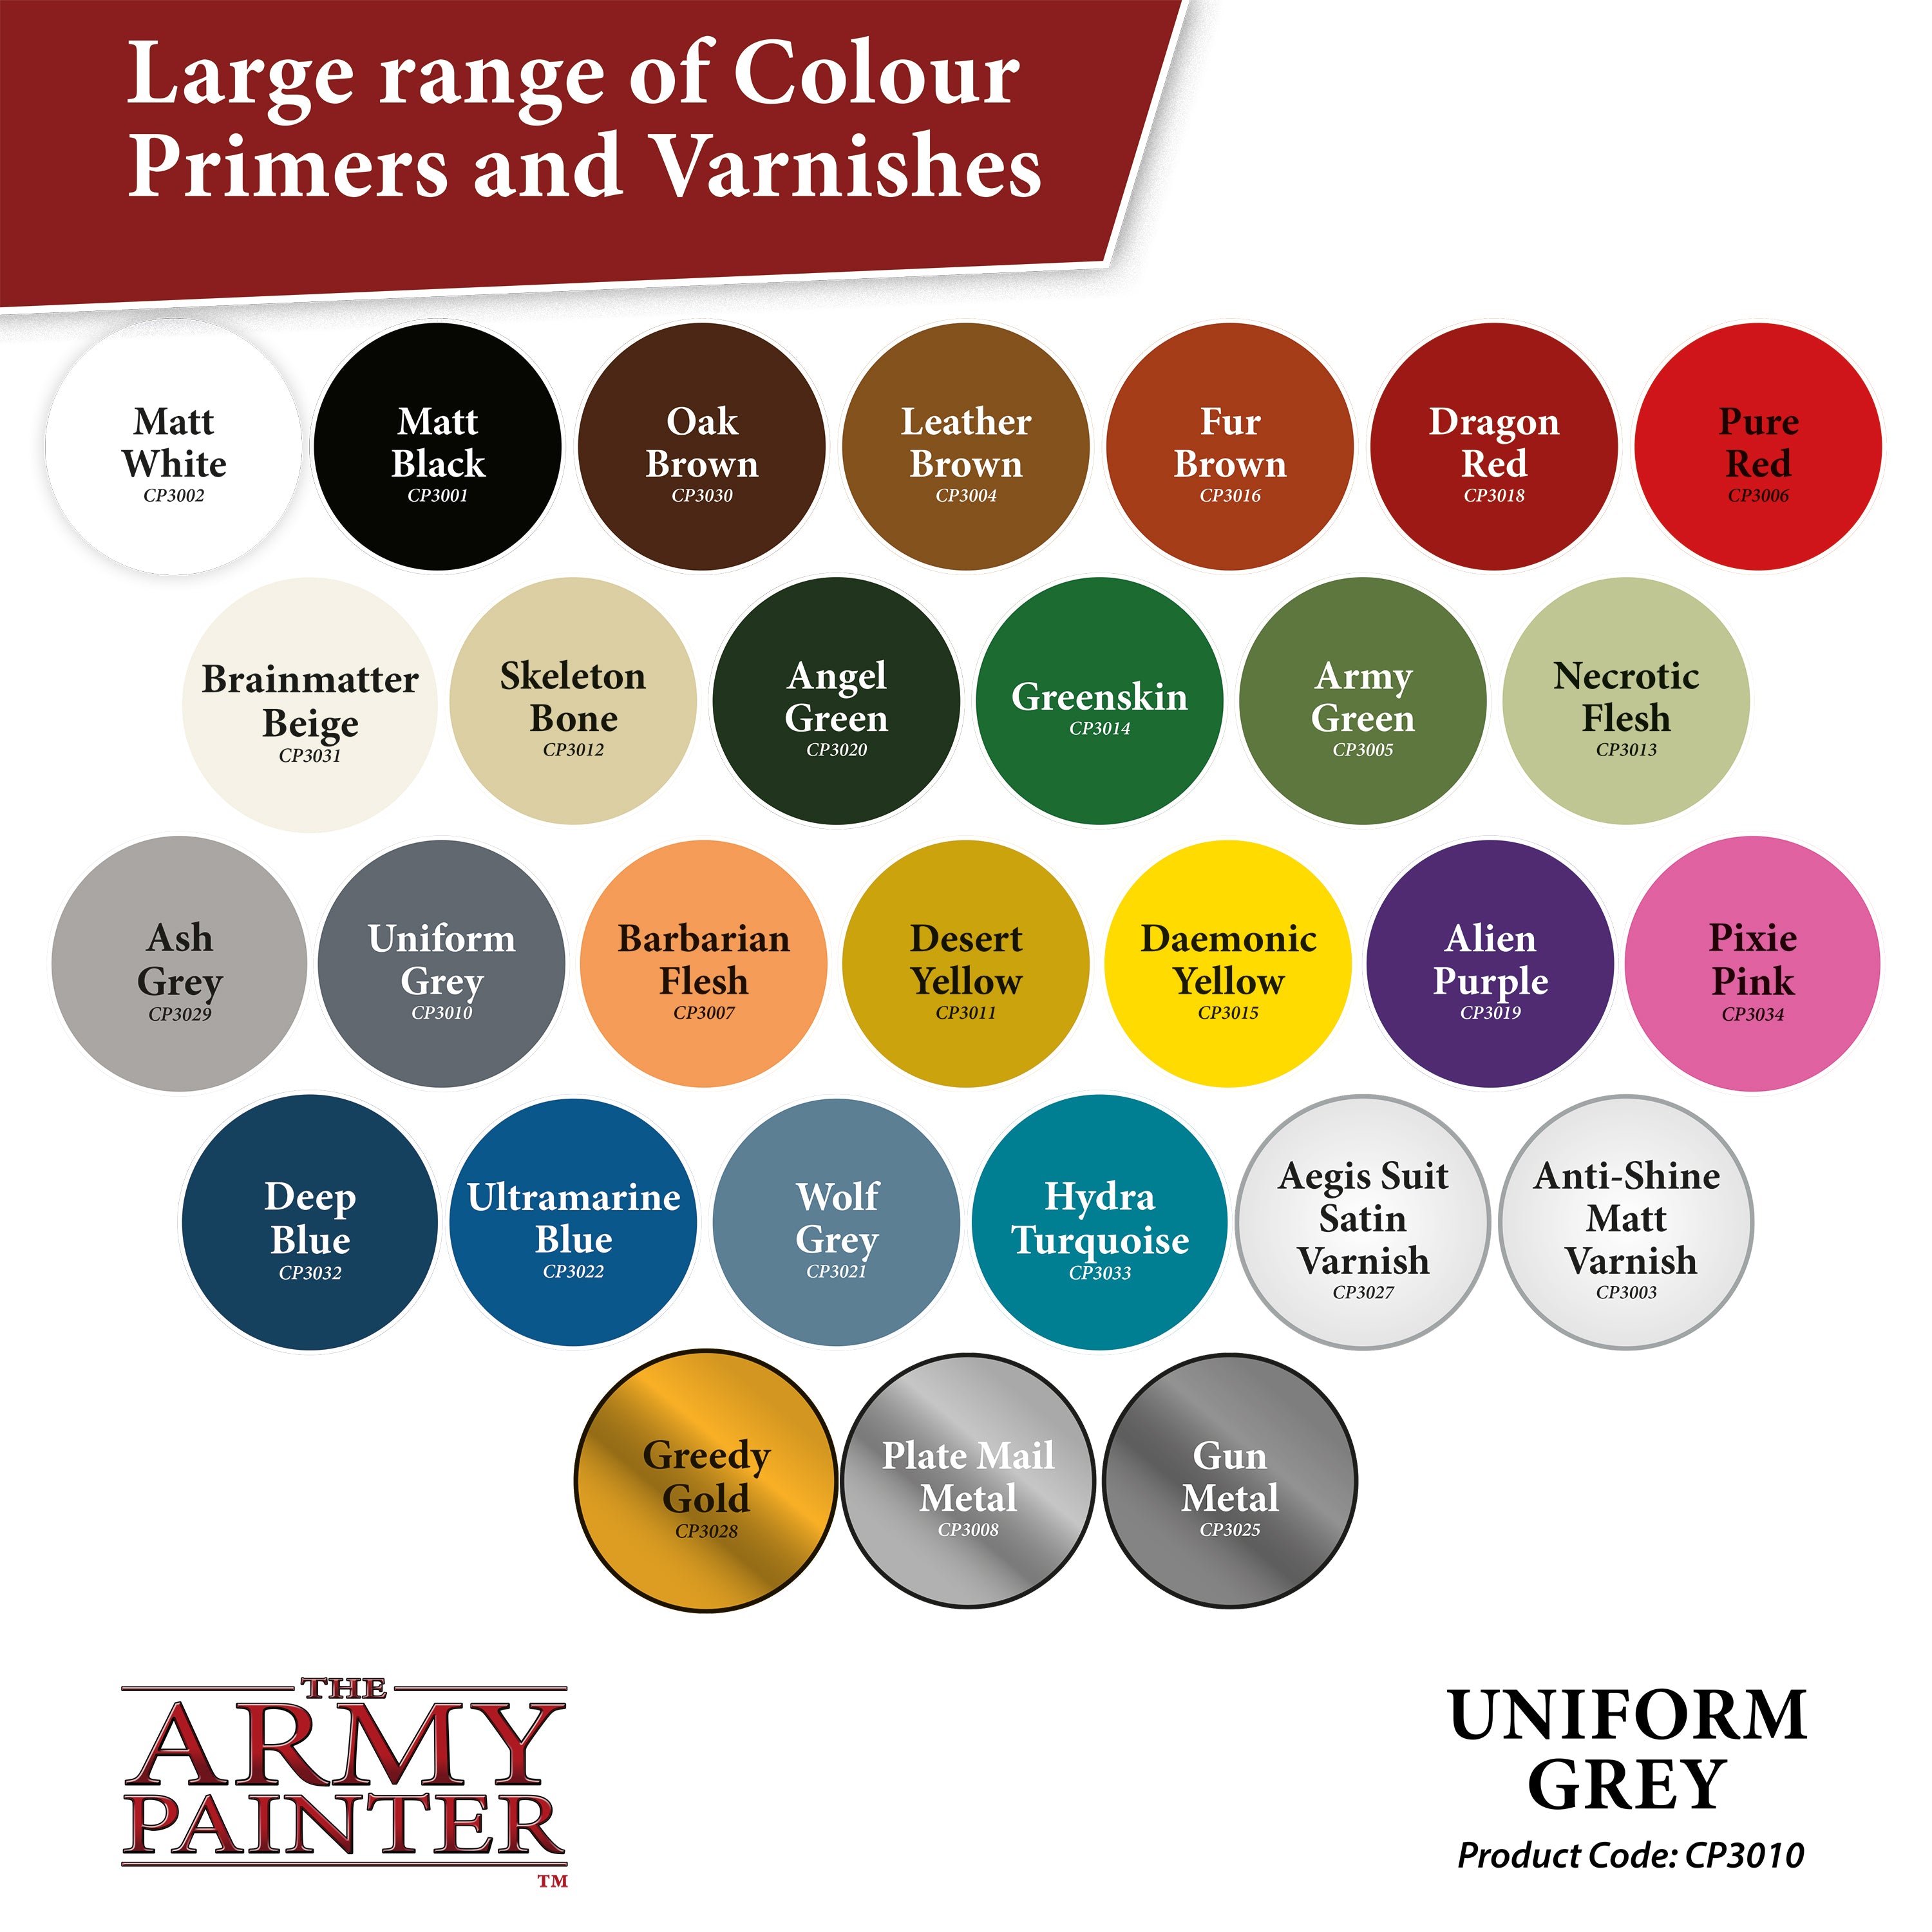 Paint Colour Primer Uniform Grey - Labyrinth Games & Puzzles